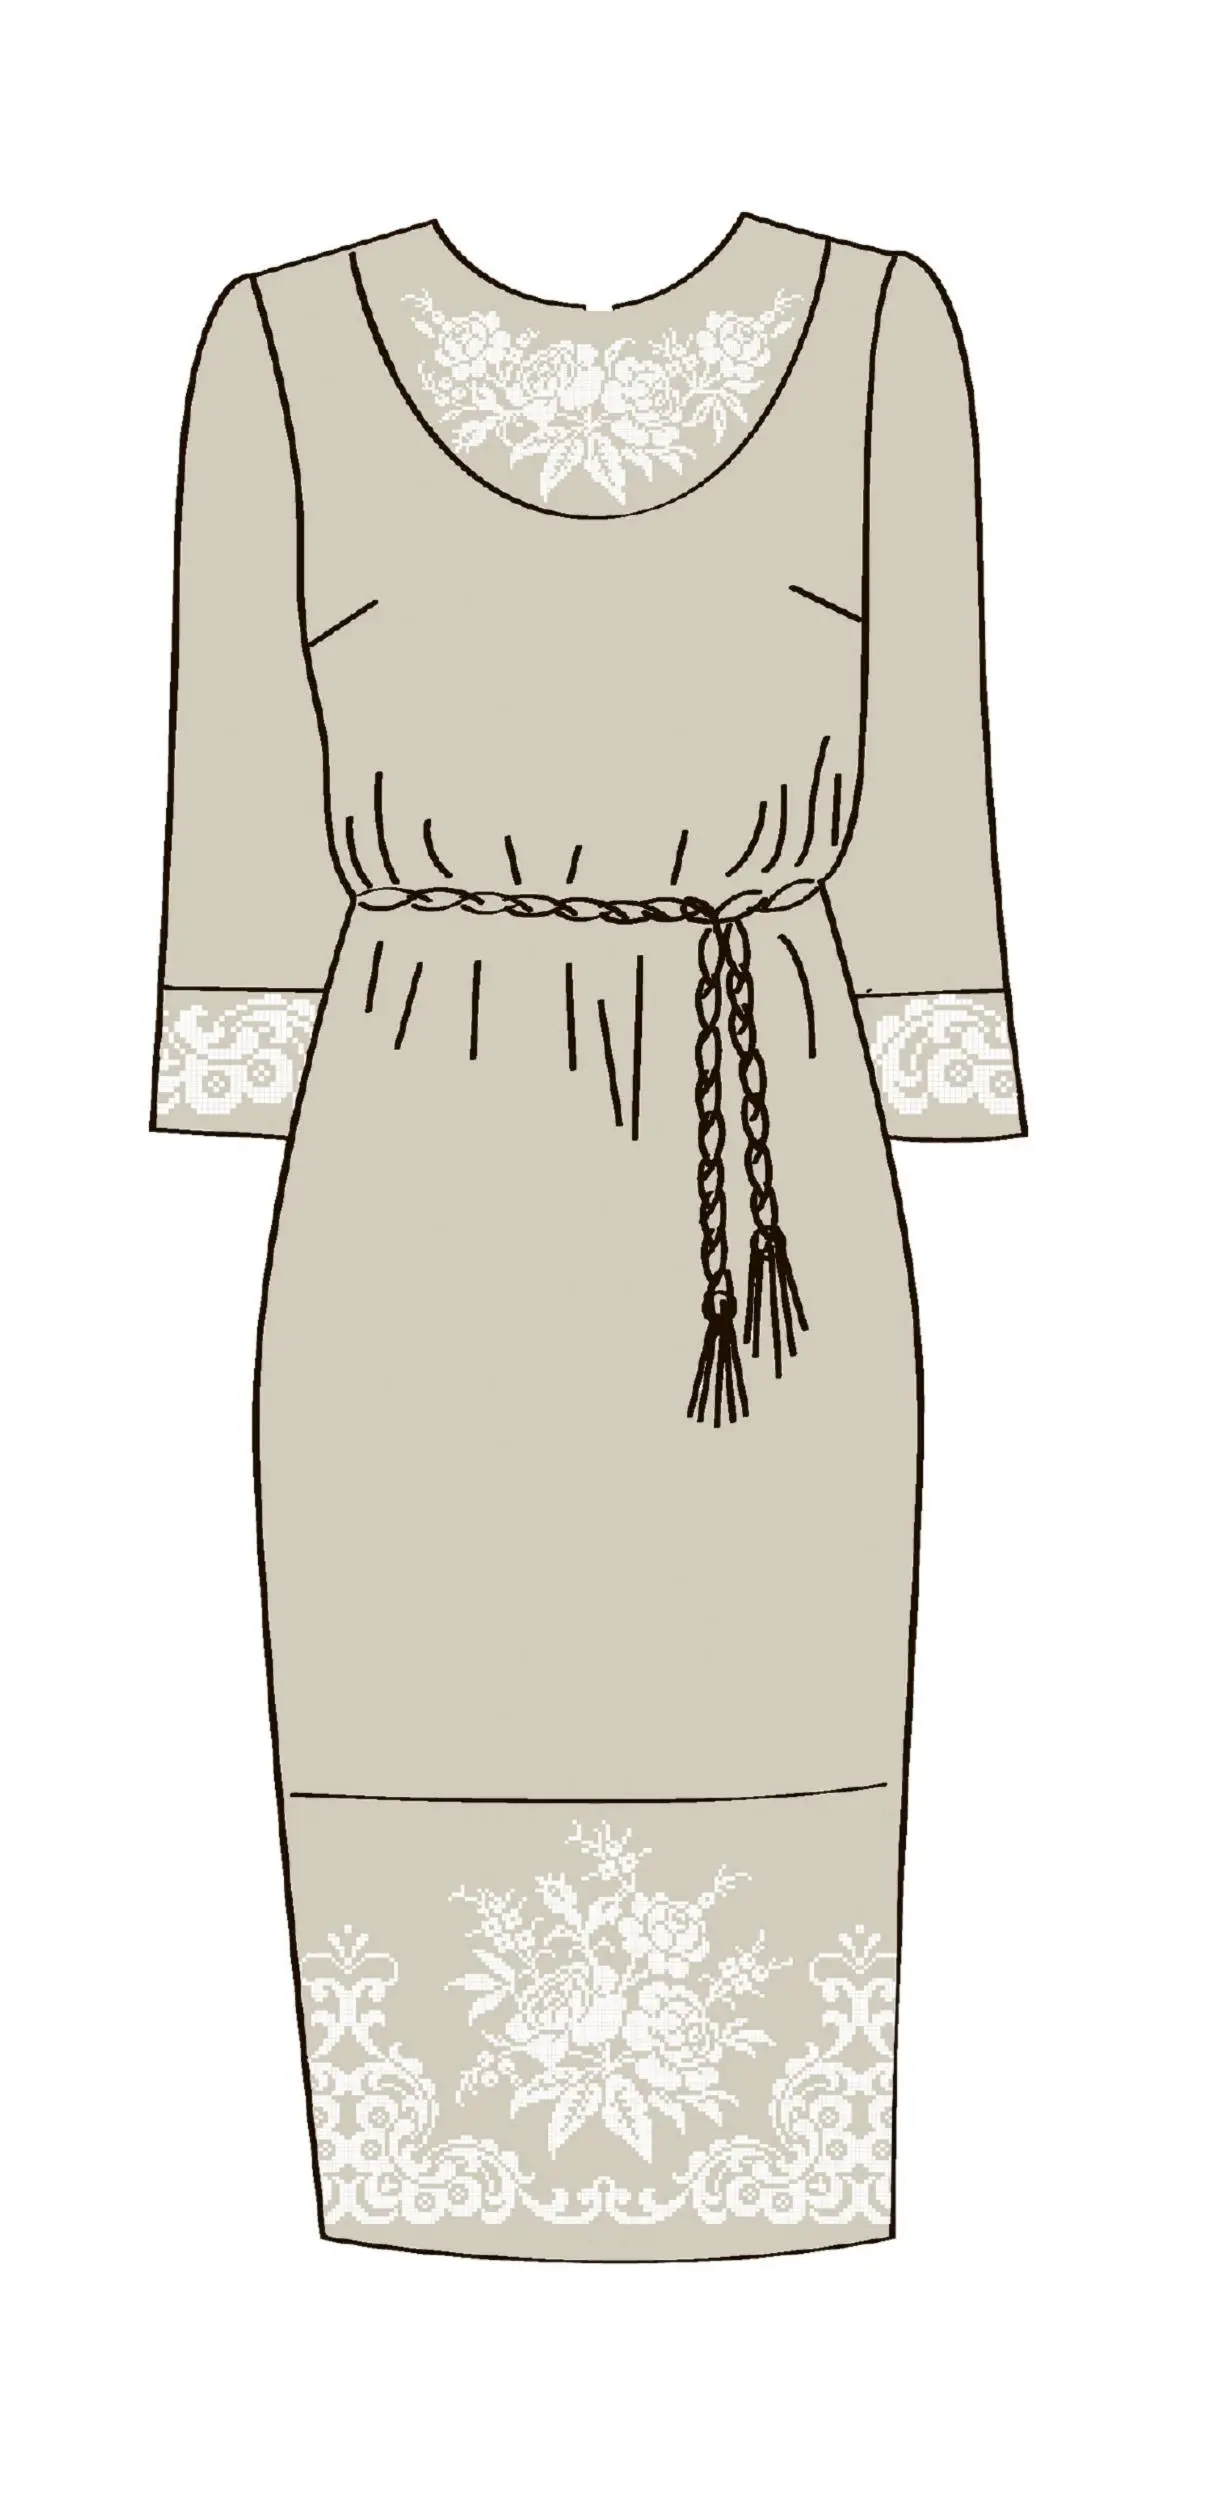 820-14/08 Плаття жіноче з поясом, льняне, розмір 42